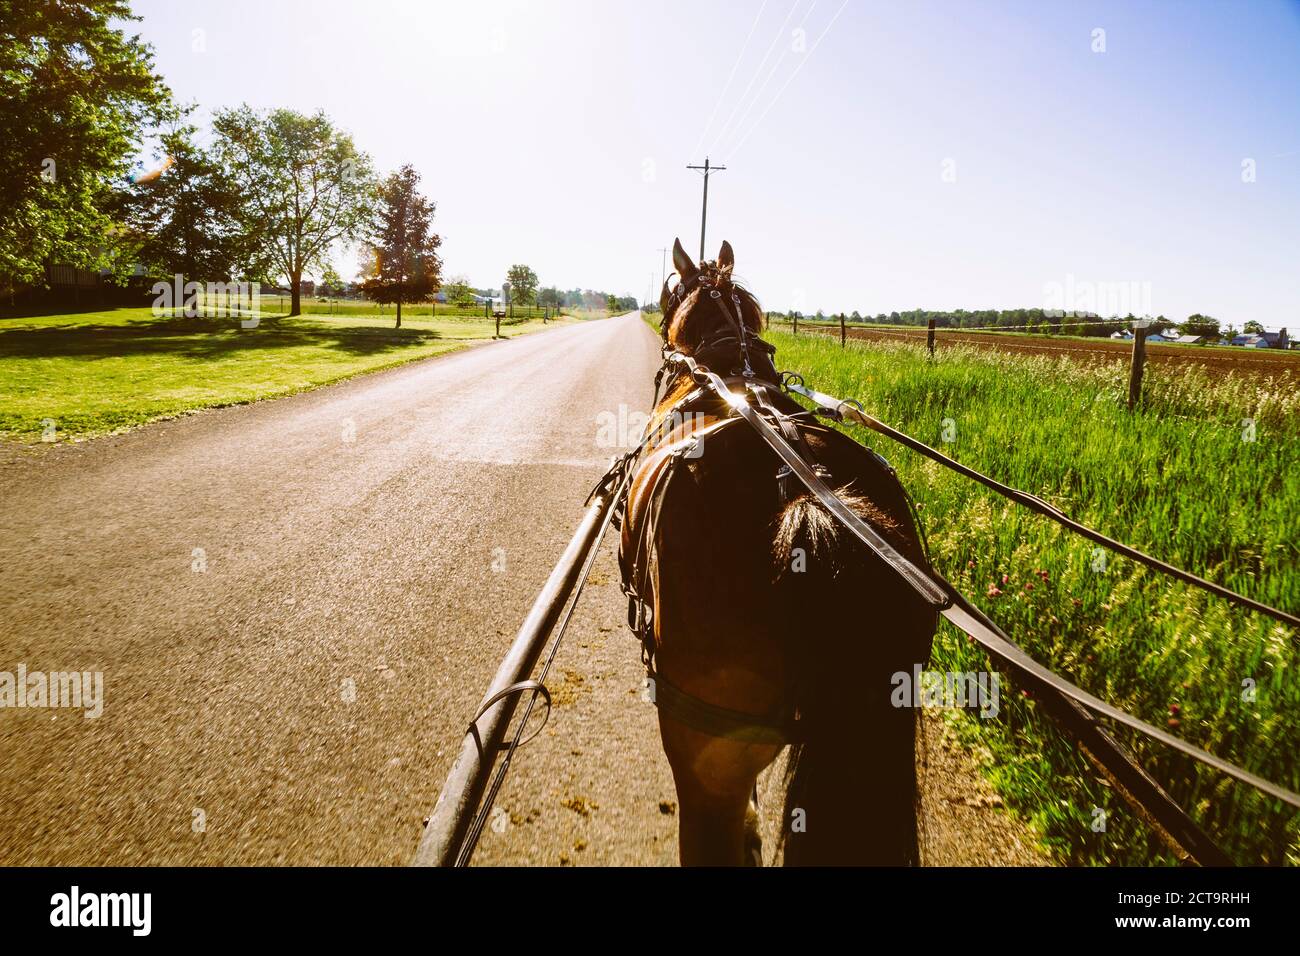 USA, Indiana, Shipshewana, Amish buggy and horse Stock Photo